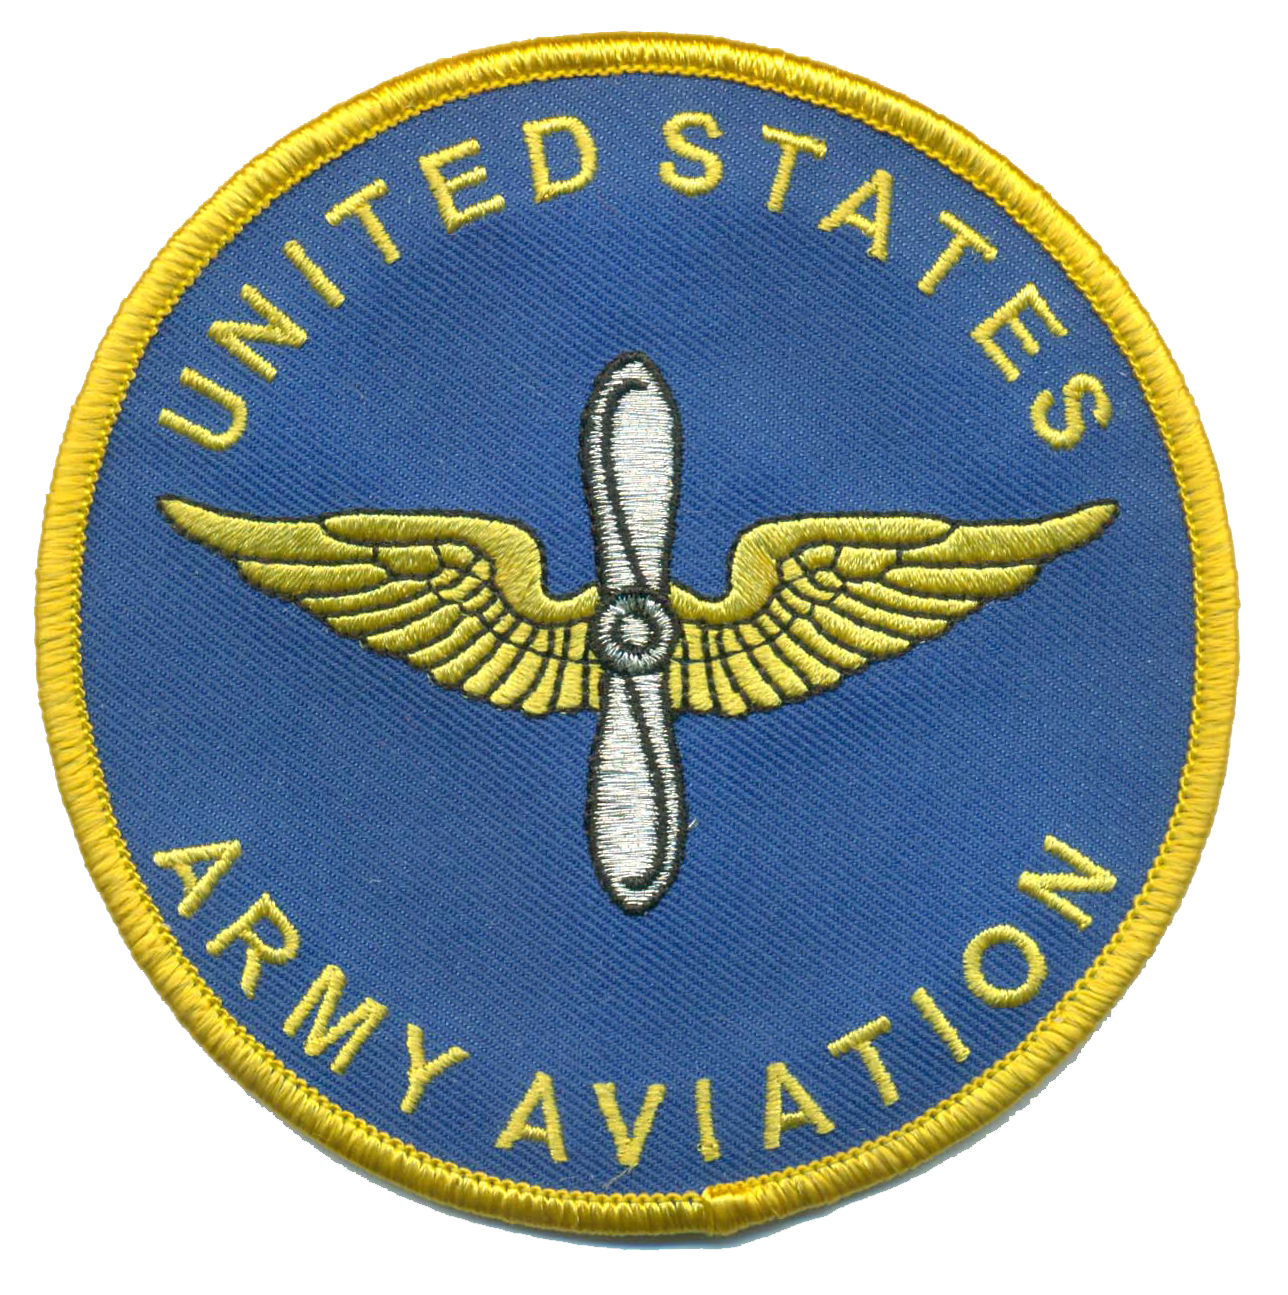 U.S. Army Aviation Novelty Patch